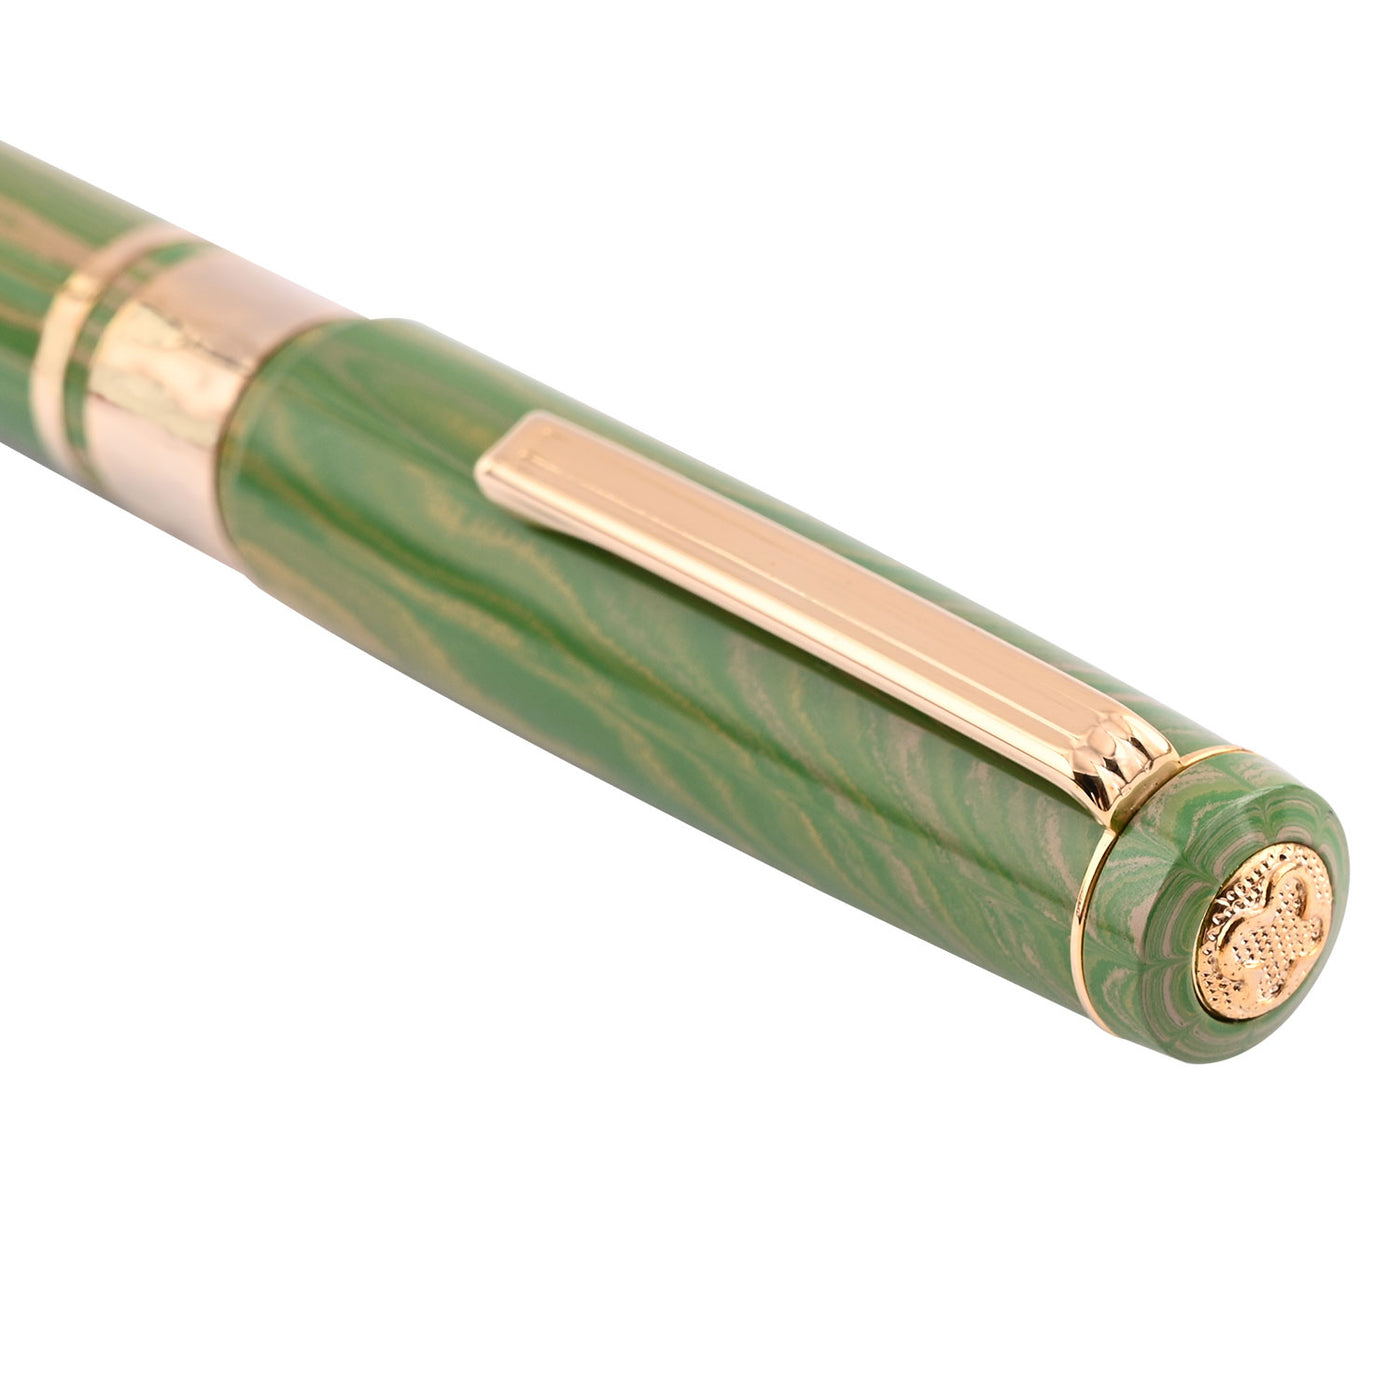 Esterbrook Big-J Fountain Pen - Lotus Green GT 6